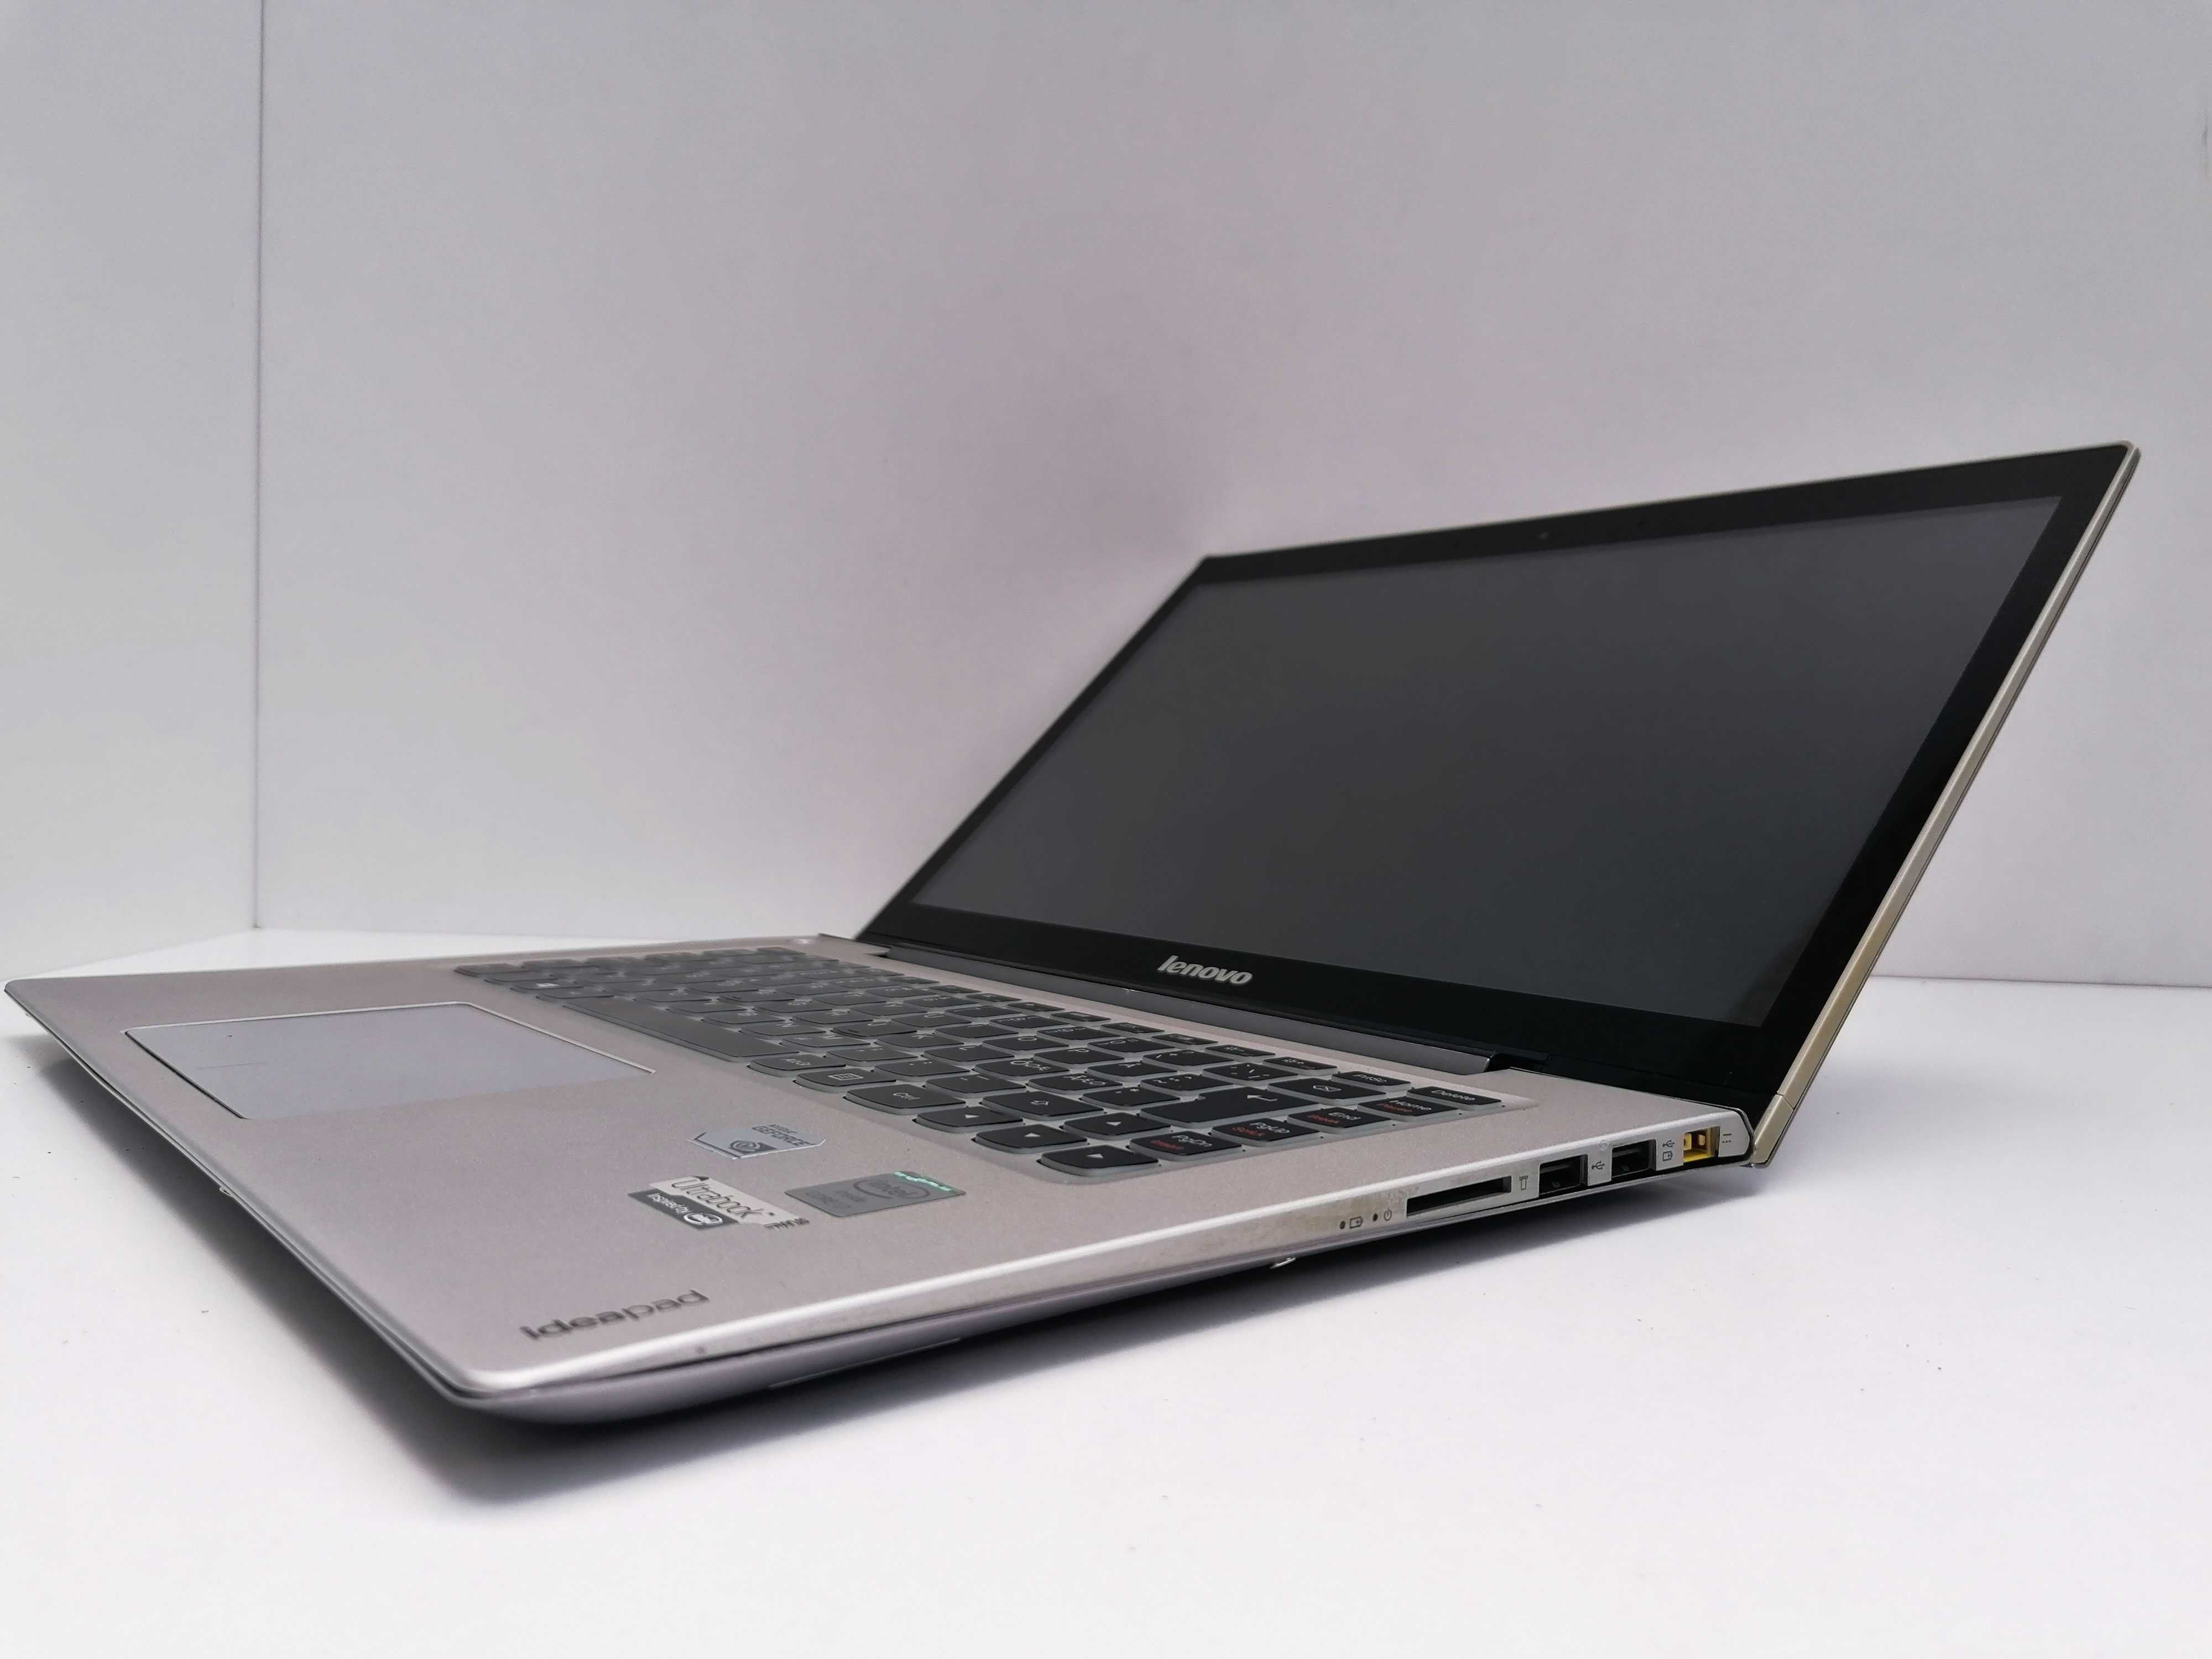 Lenovo ideapad U430 Touch FHD Touchscreen i7-4500U 8 GB RAM 128 GB SSD